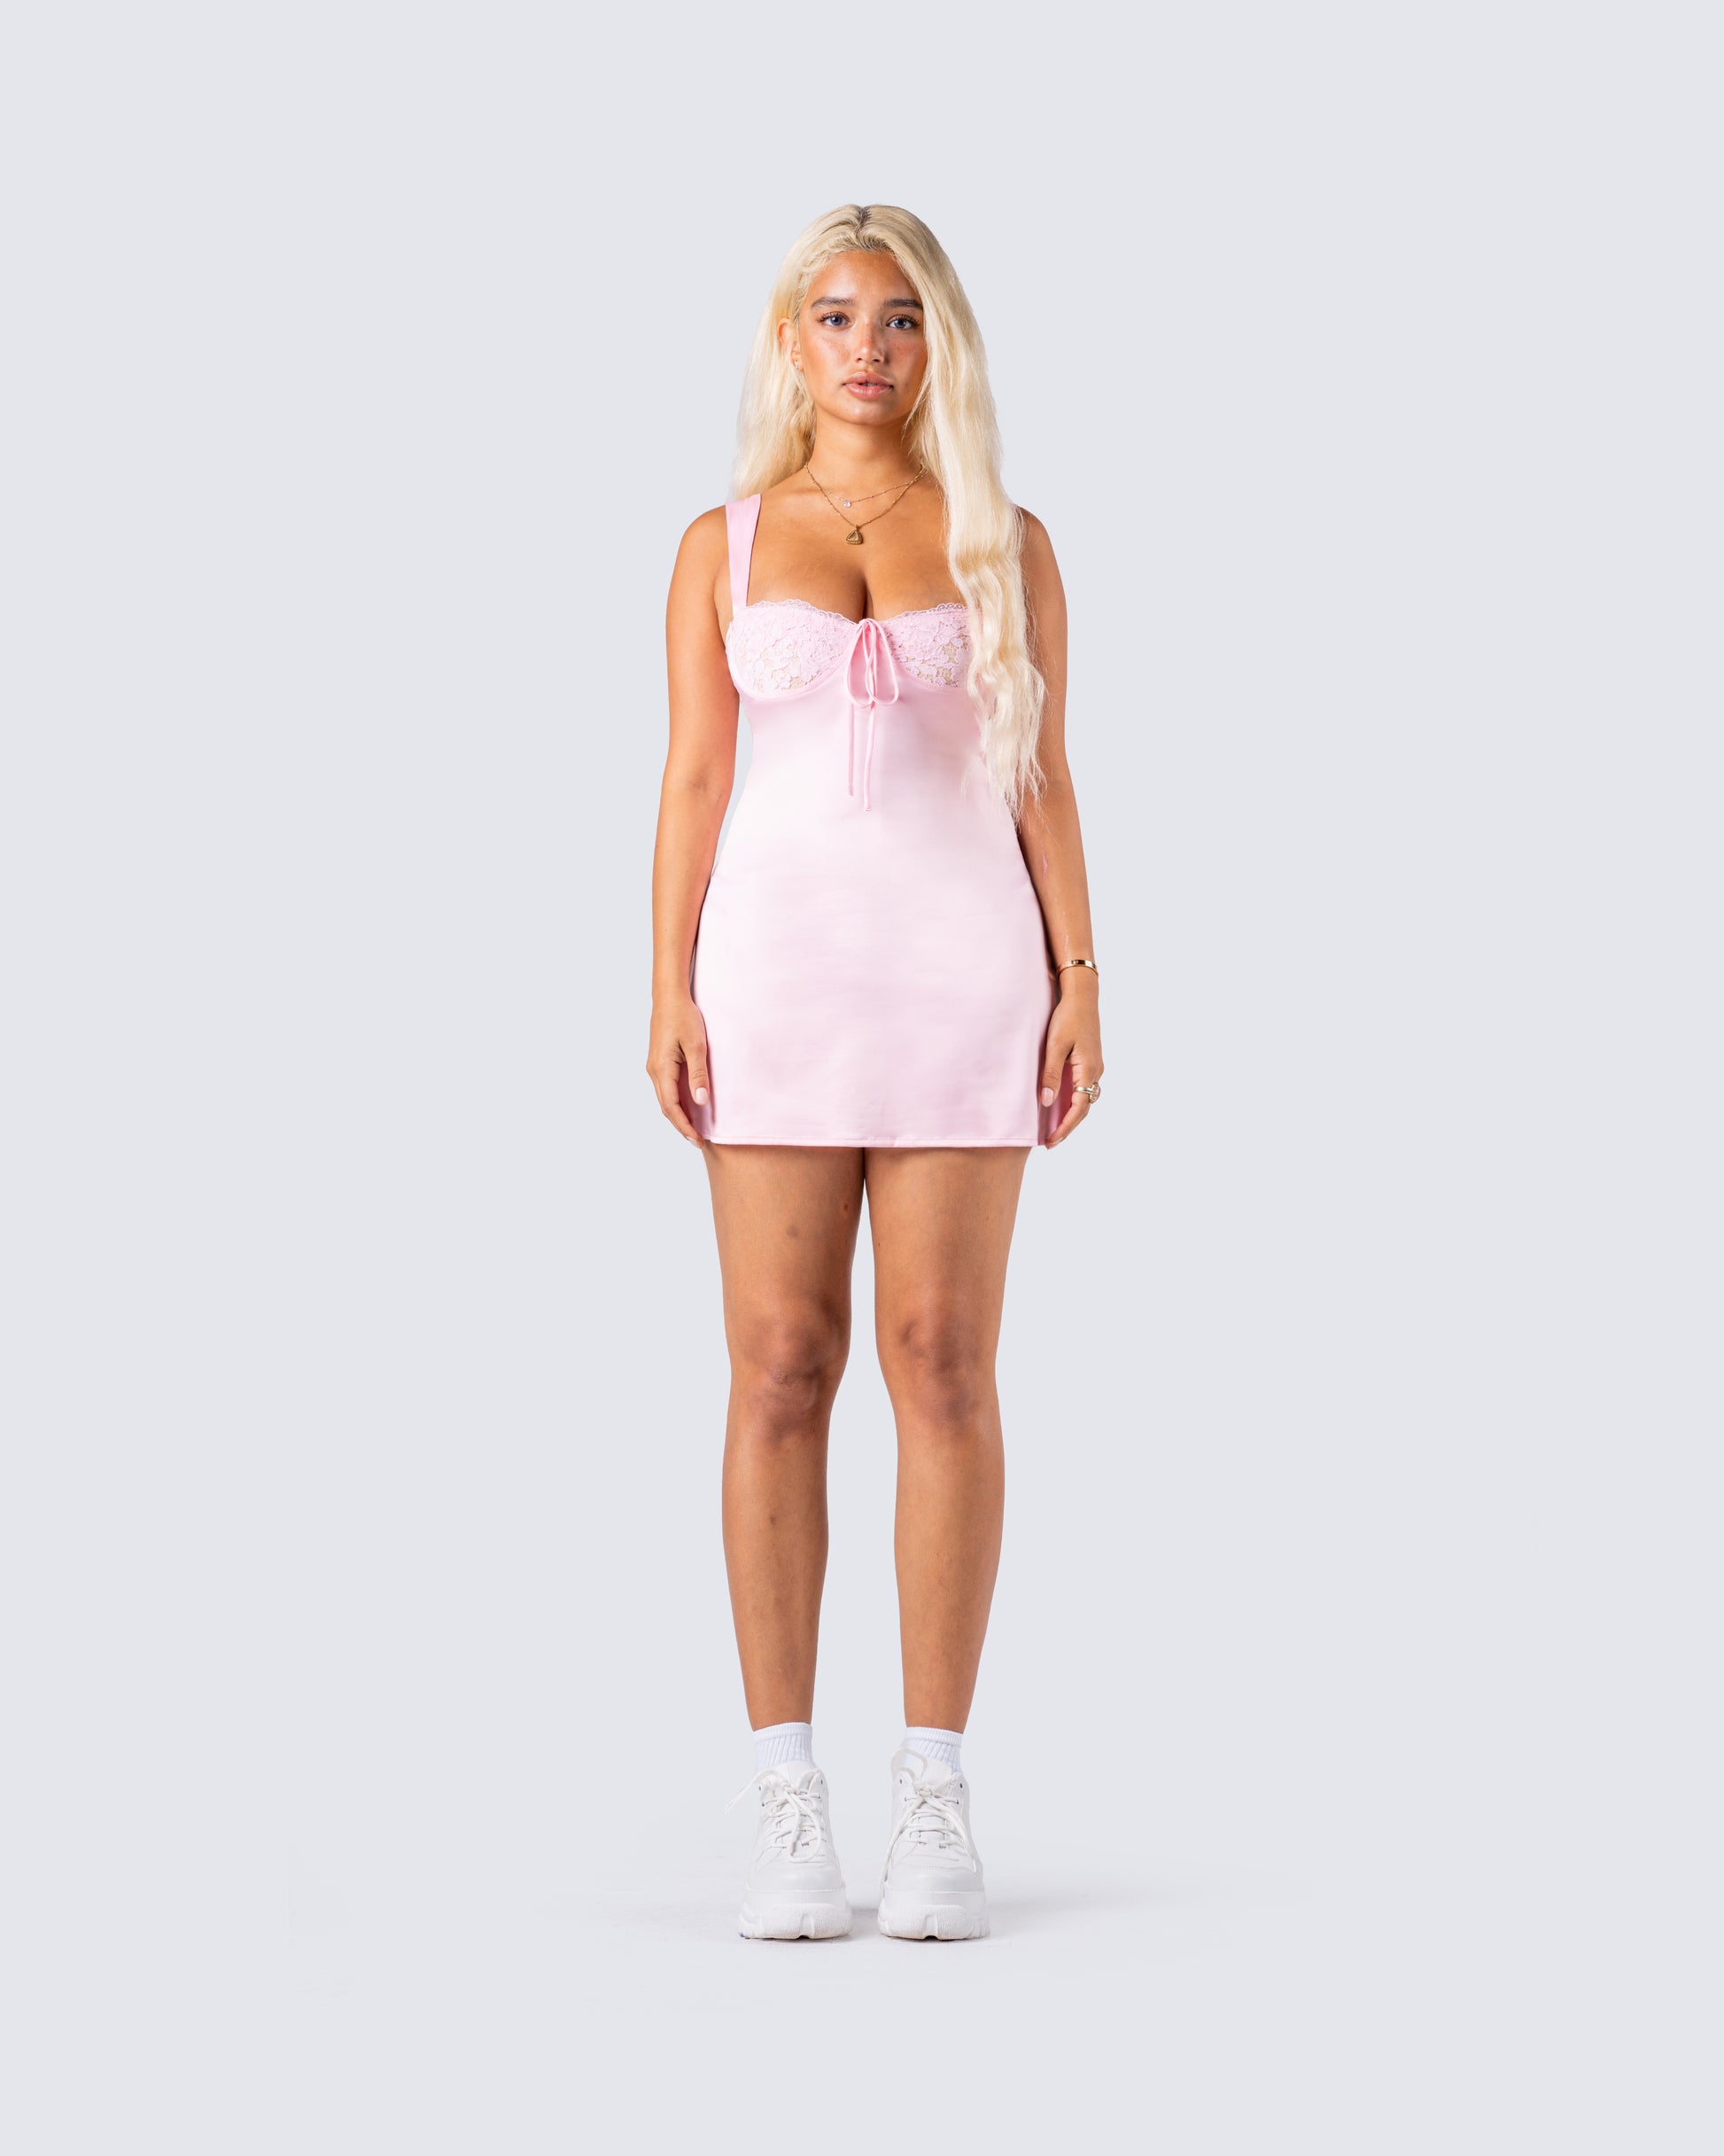 Mabel Pink Sleeveless Bodysuit